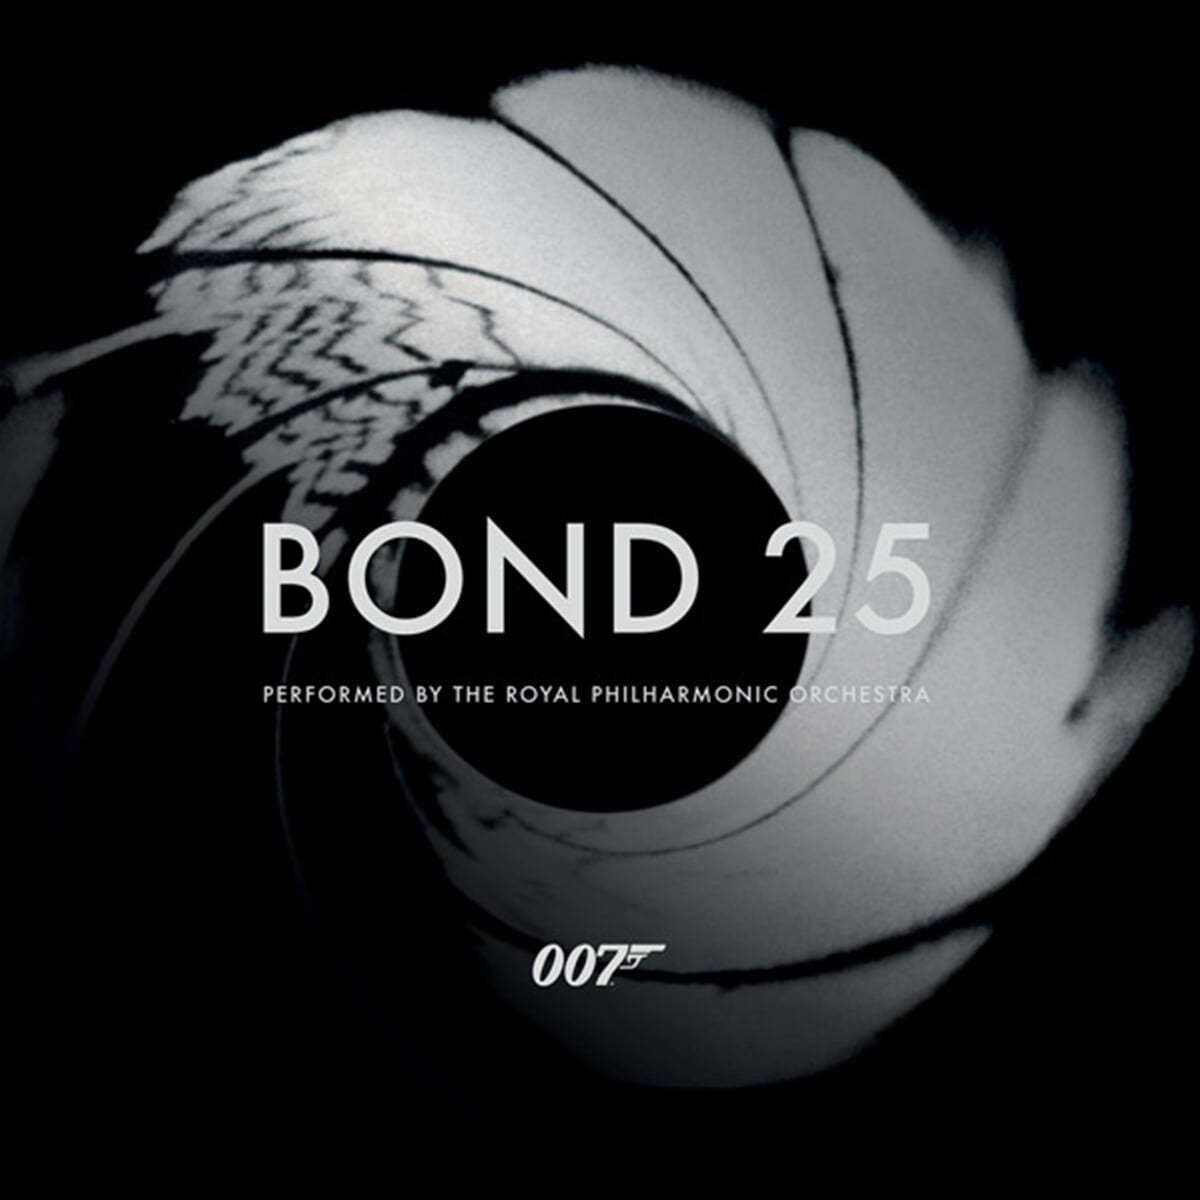 로열 필하모닉 오케스트라가 연주하는 007 시리즈 영화음악 (Bond 25)